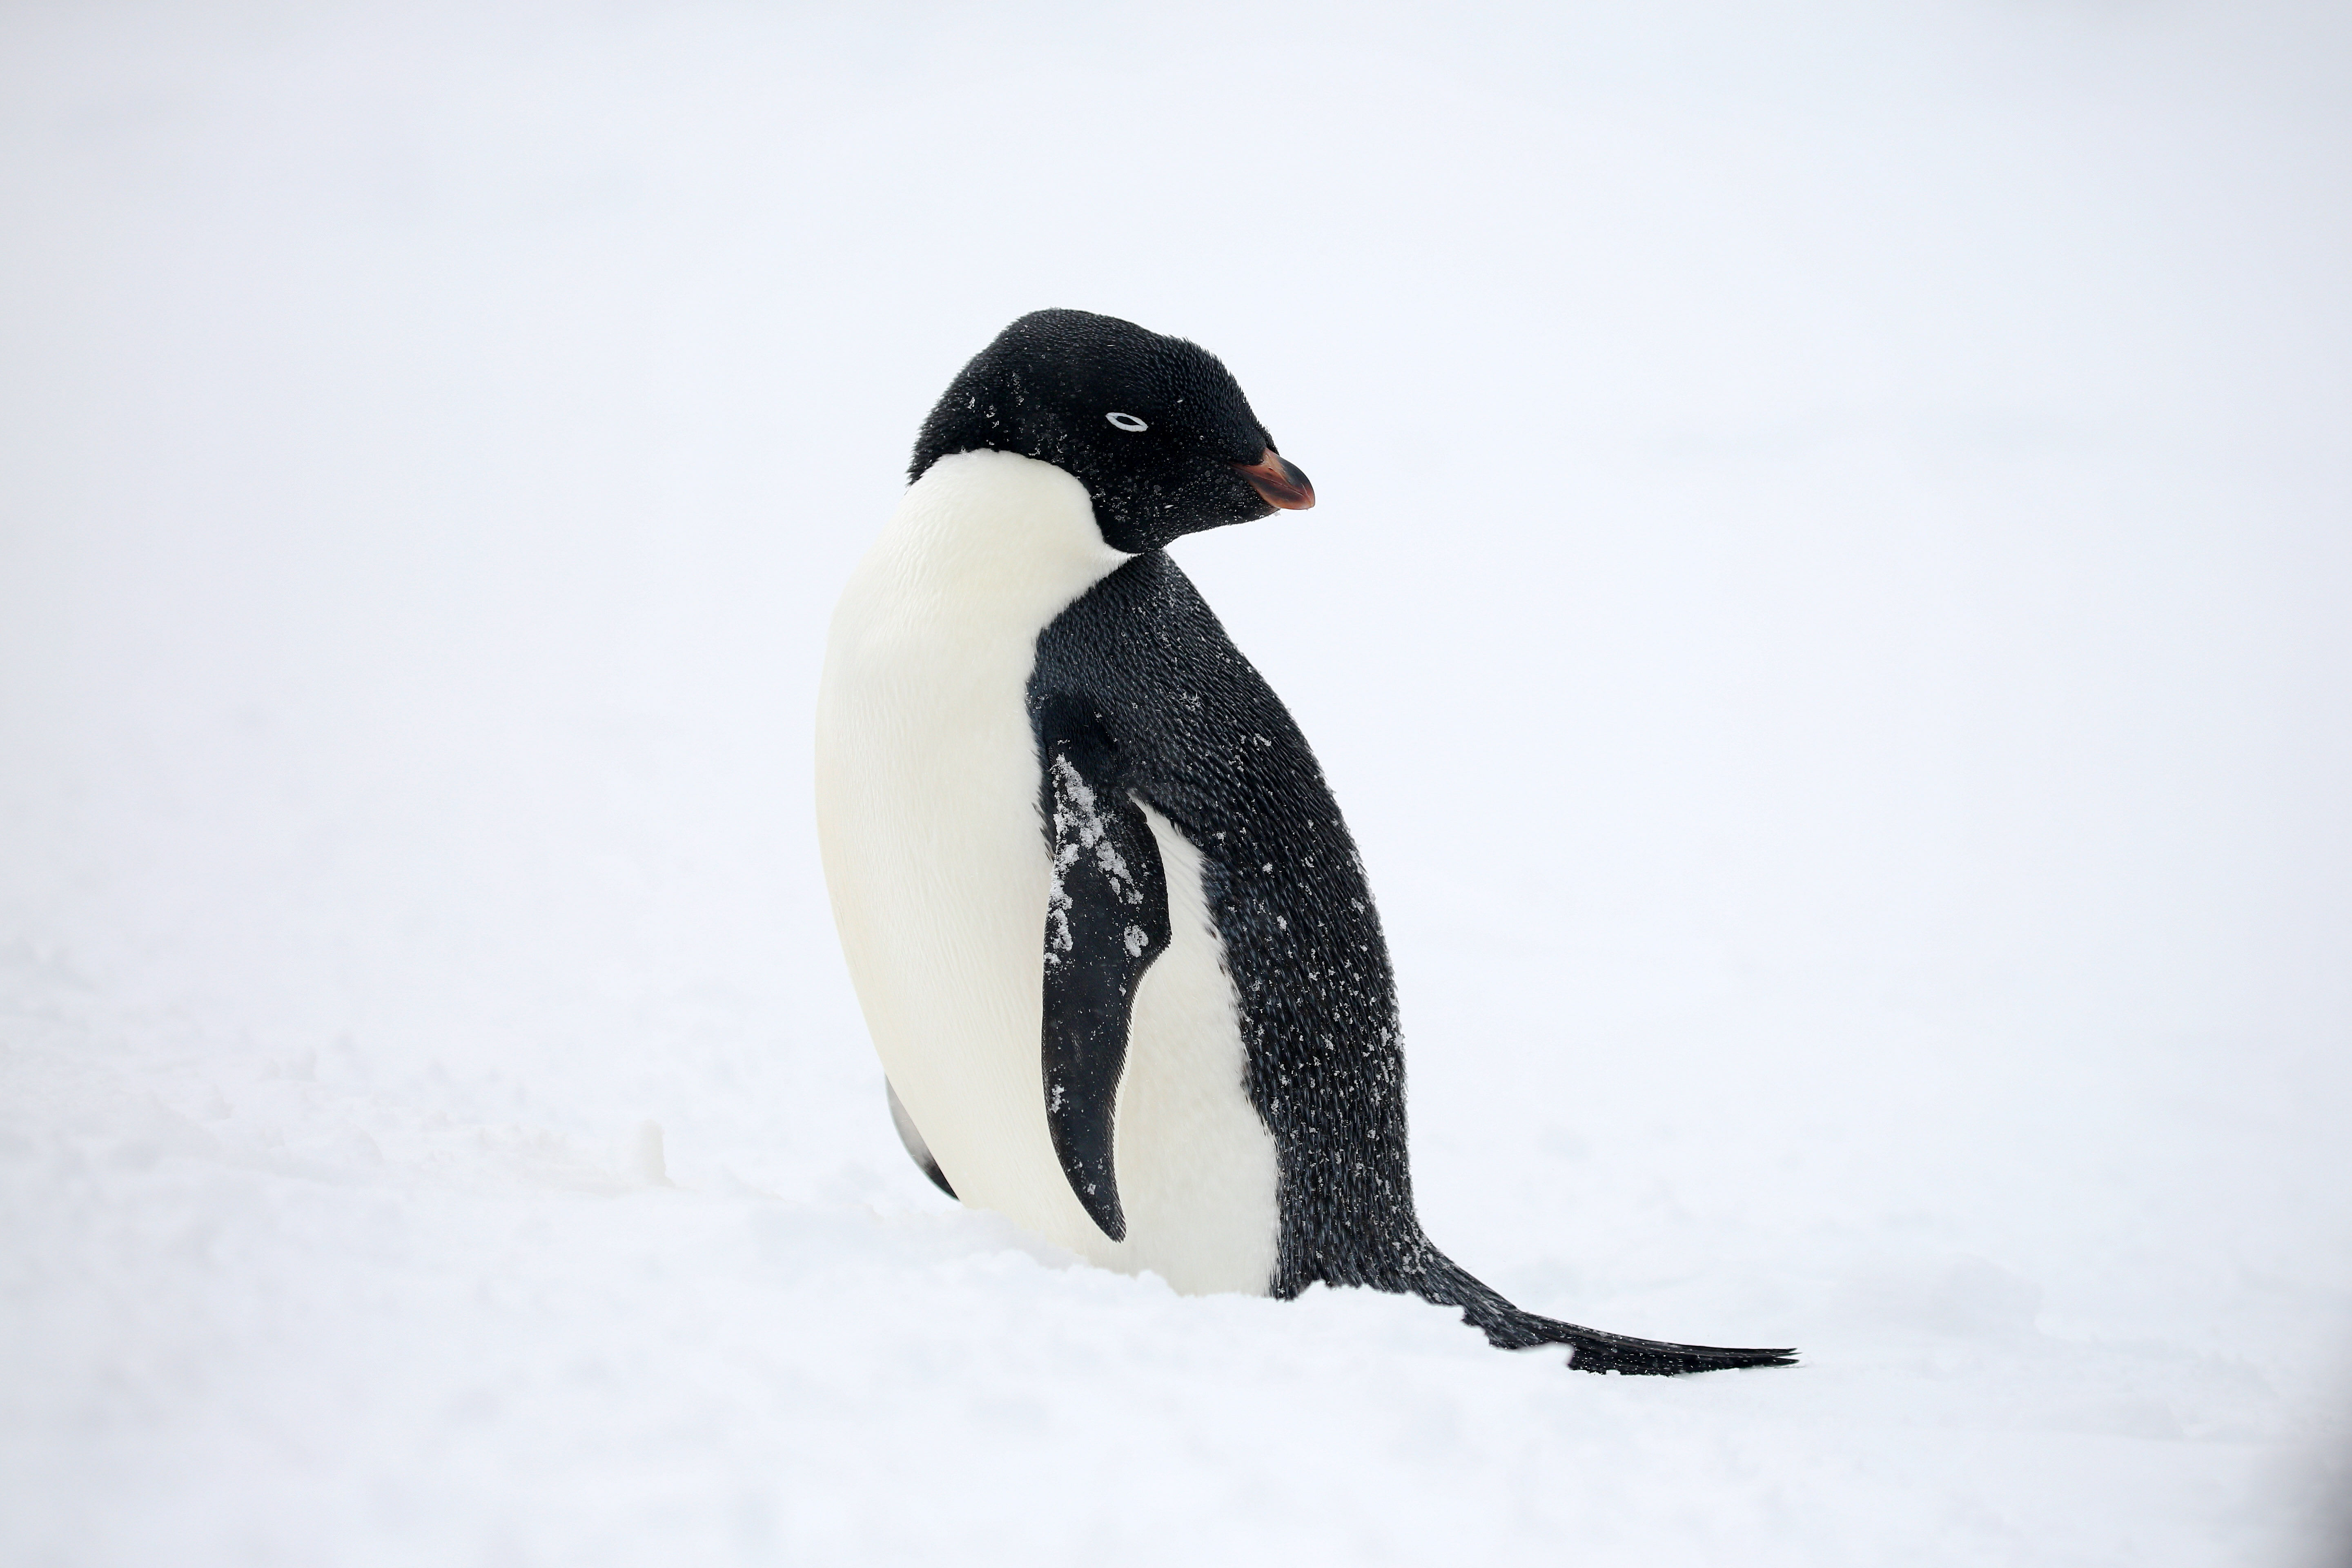 An adélie penguin. Photo by A2A Safaris.